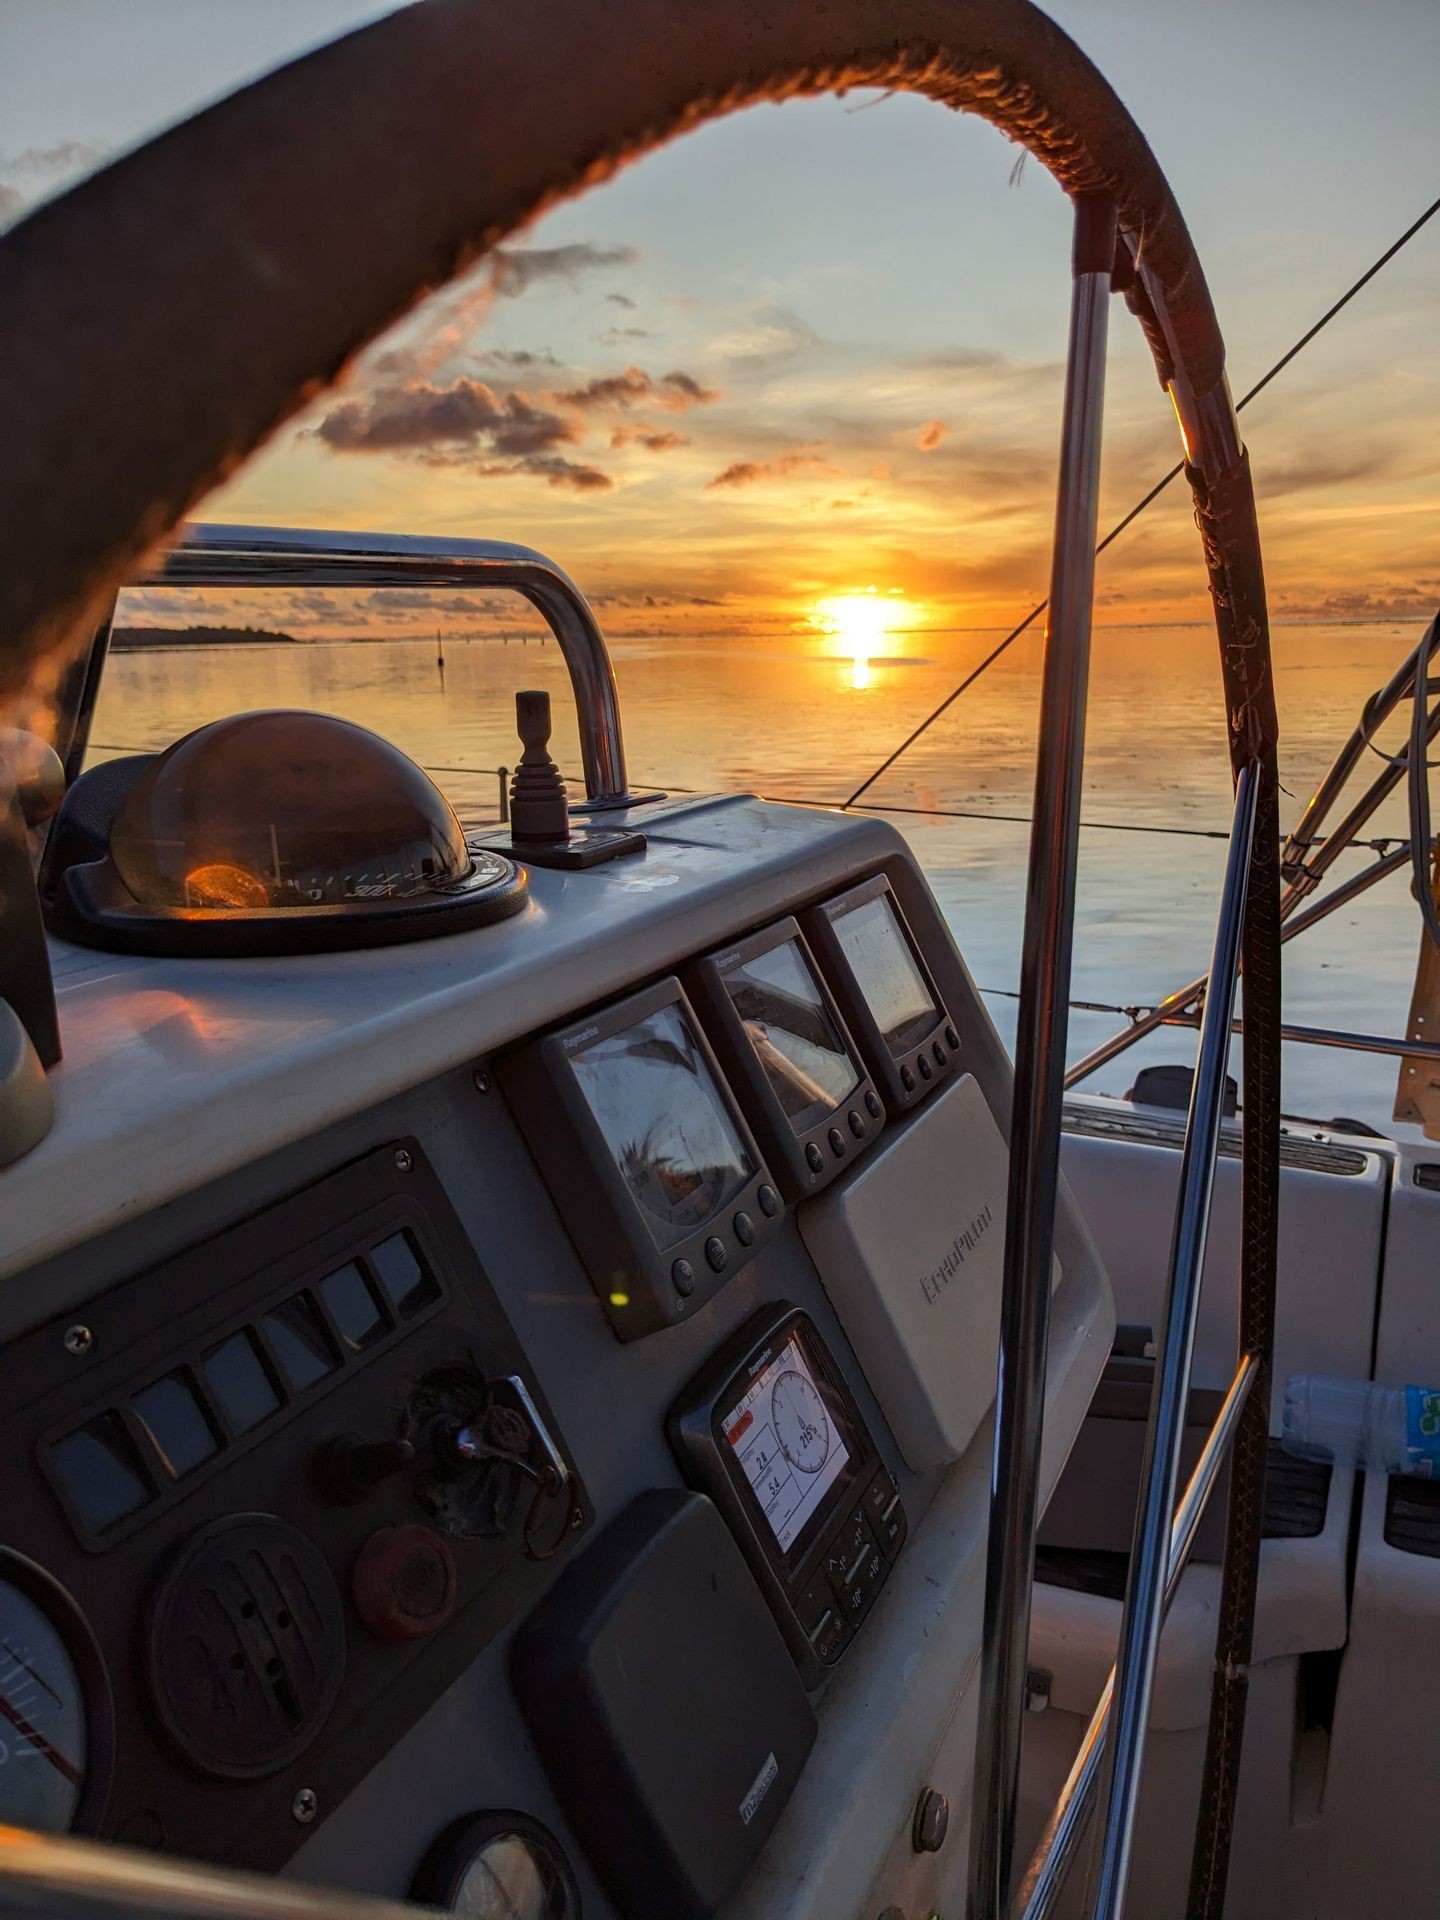 le coucher de soleil sur la barre du voilier Mori Ora - sunset colors on the wheel of Mori Ora sailboat